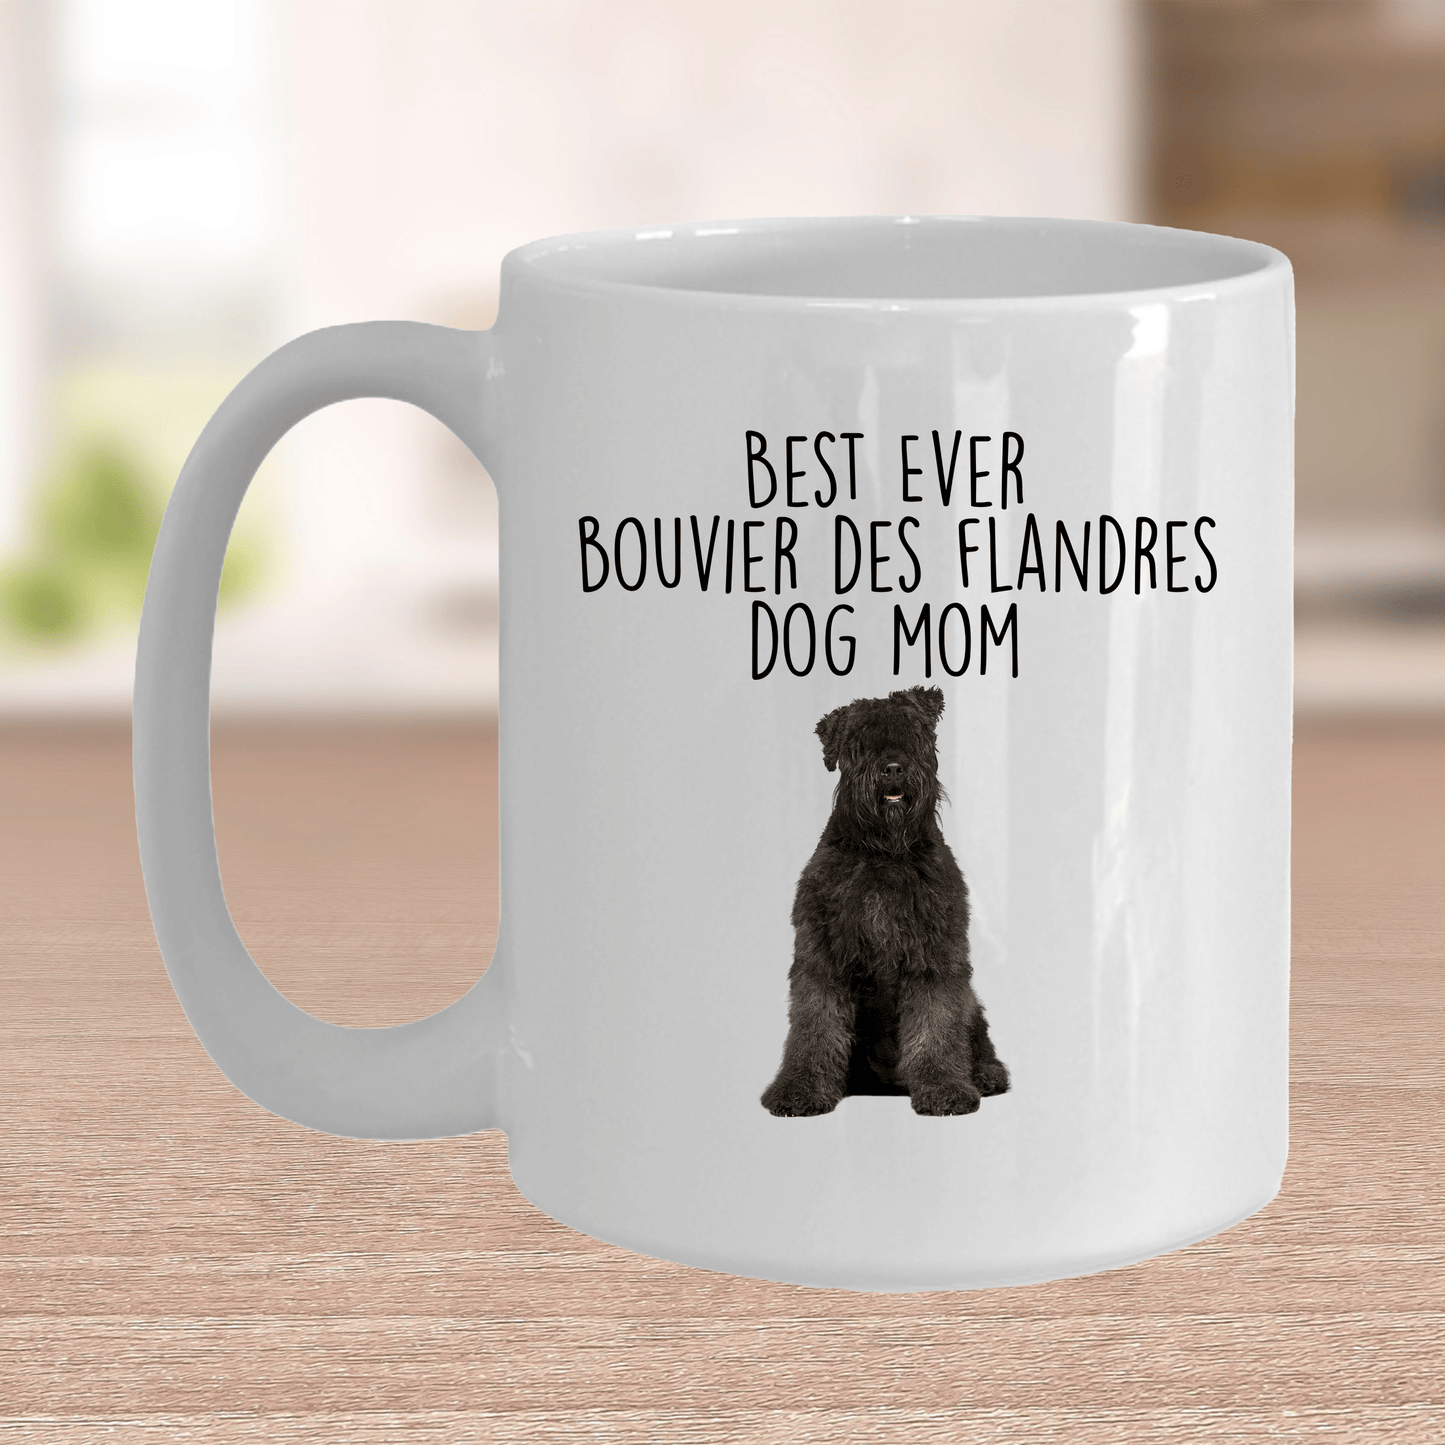 Best Ever Bouvier des Flandres Dog Mom Ceramic Coffee Mug